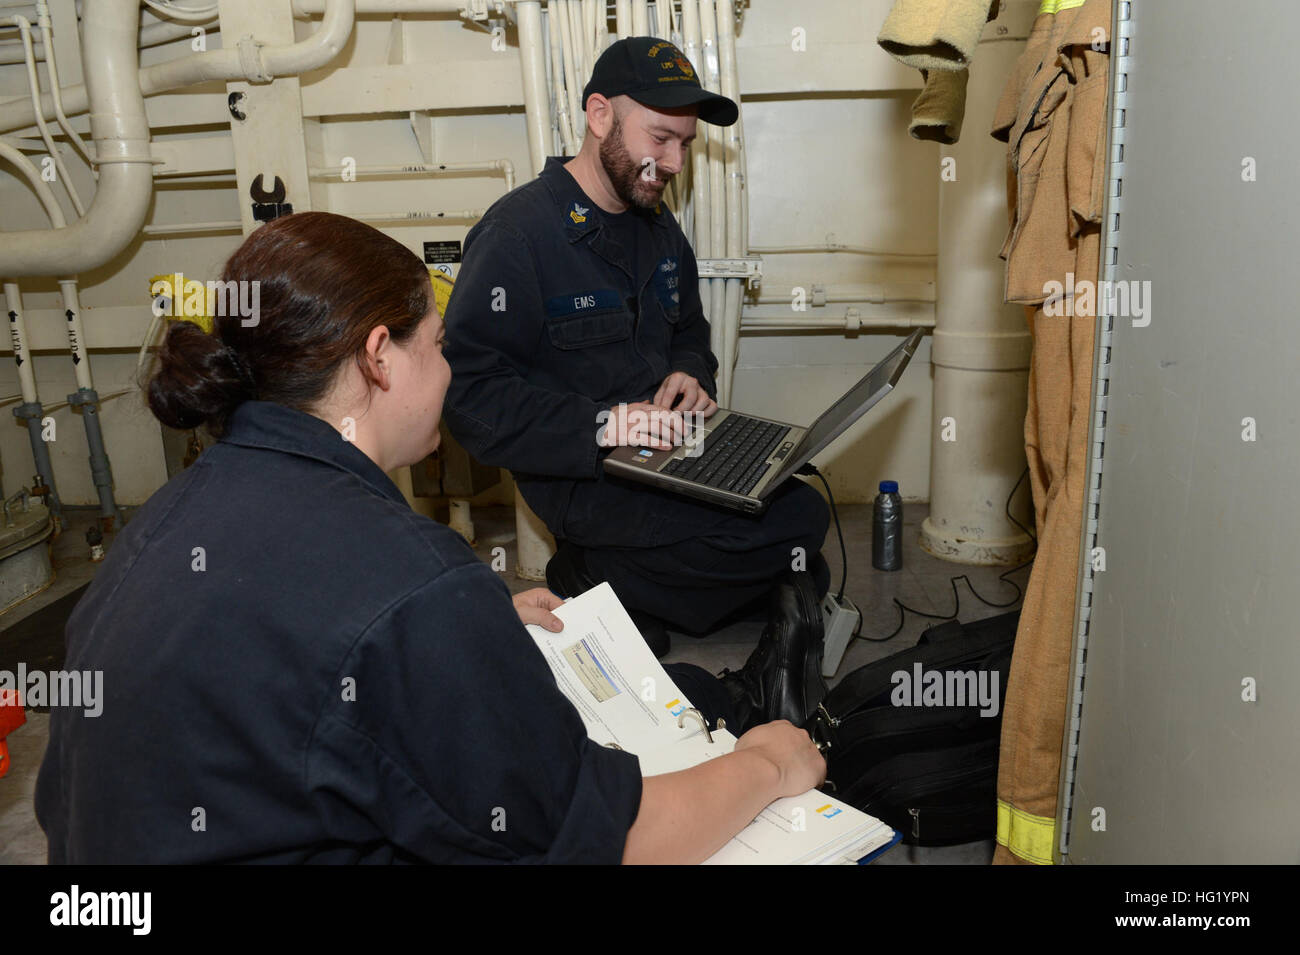 US Navy Electrician's Mate führt Tests in der Batterie- und  Beleuchtungswerkstatt des Schiffs durch Stockfotografie - Alamy